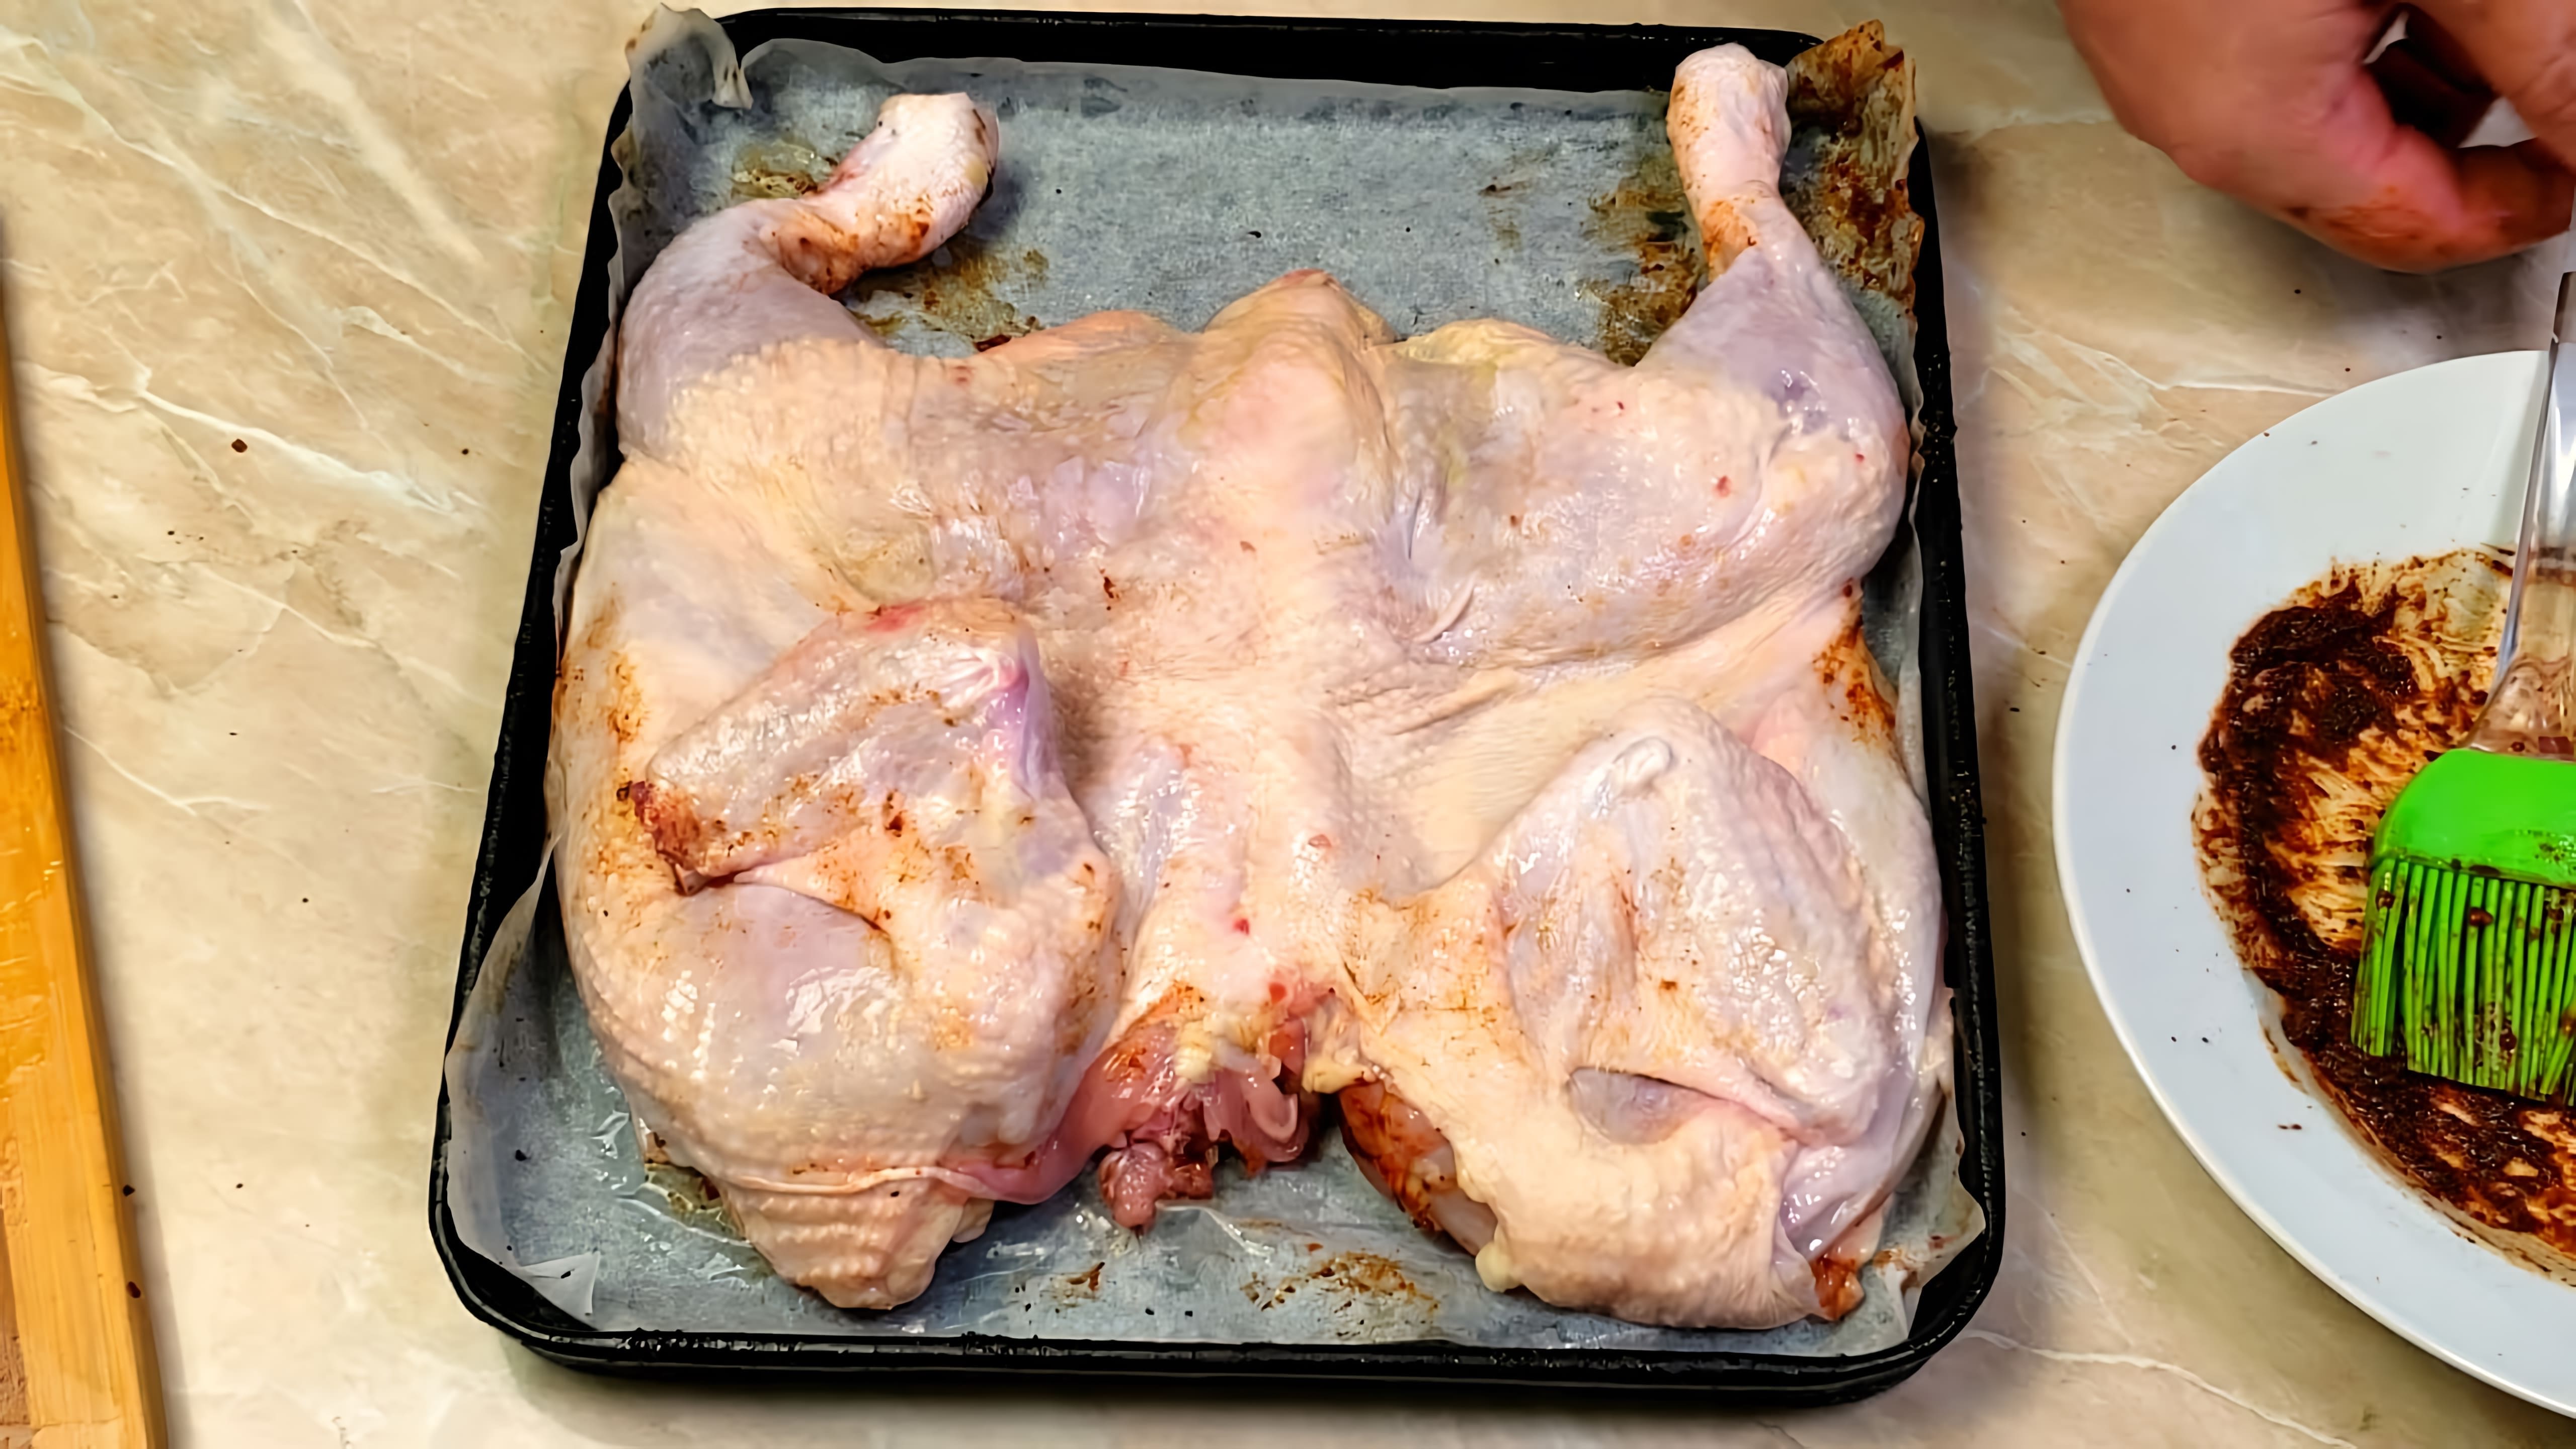 В этом видео демонстрируется рецепт приготовления курицы, которую называют цыпленок табака